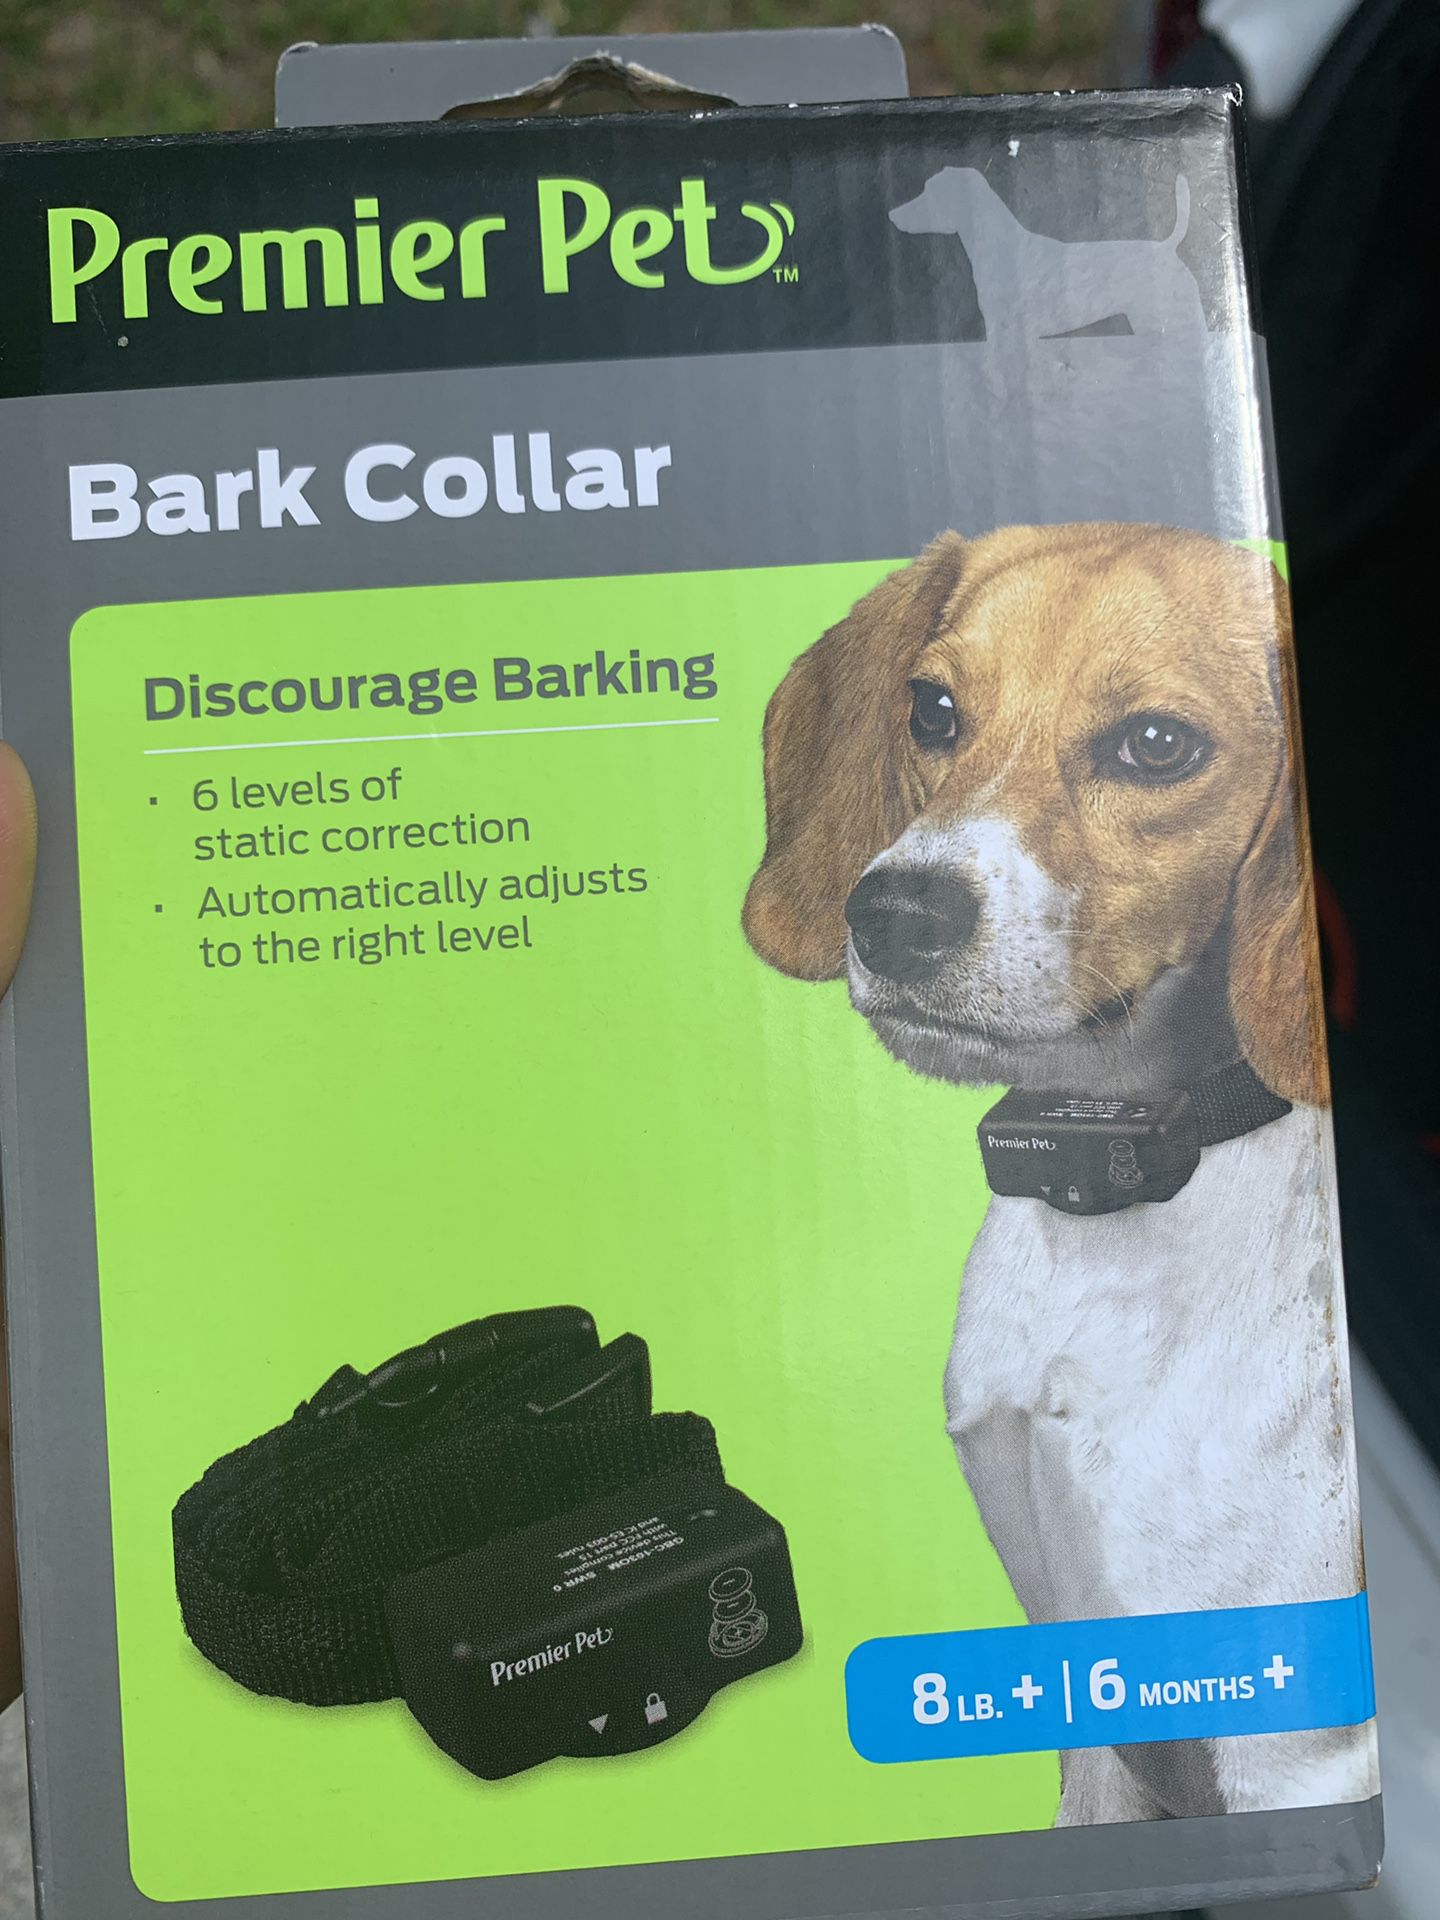 Bark collar